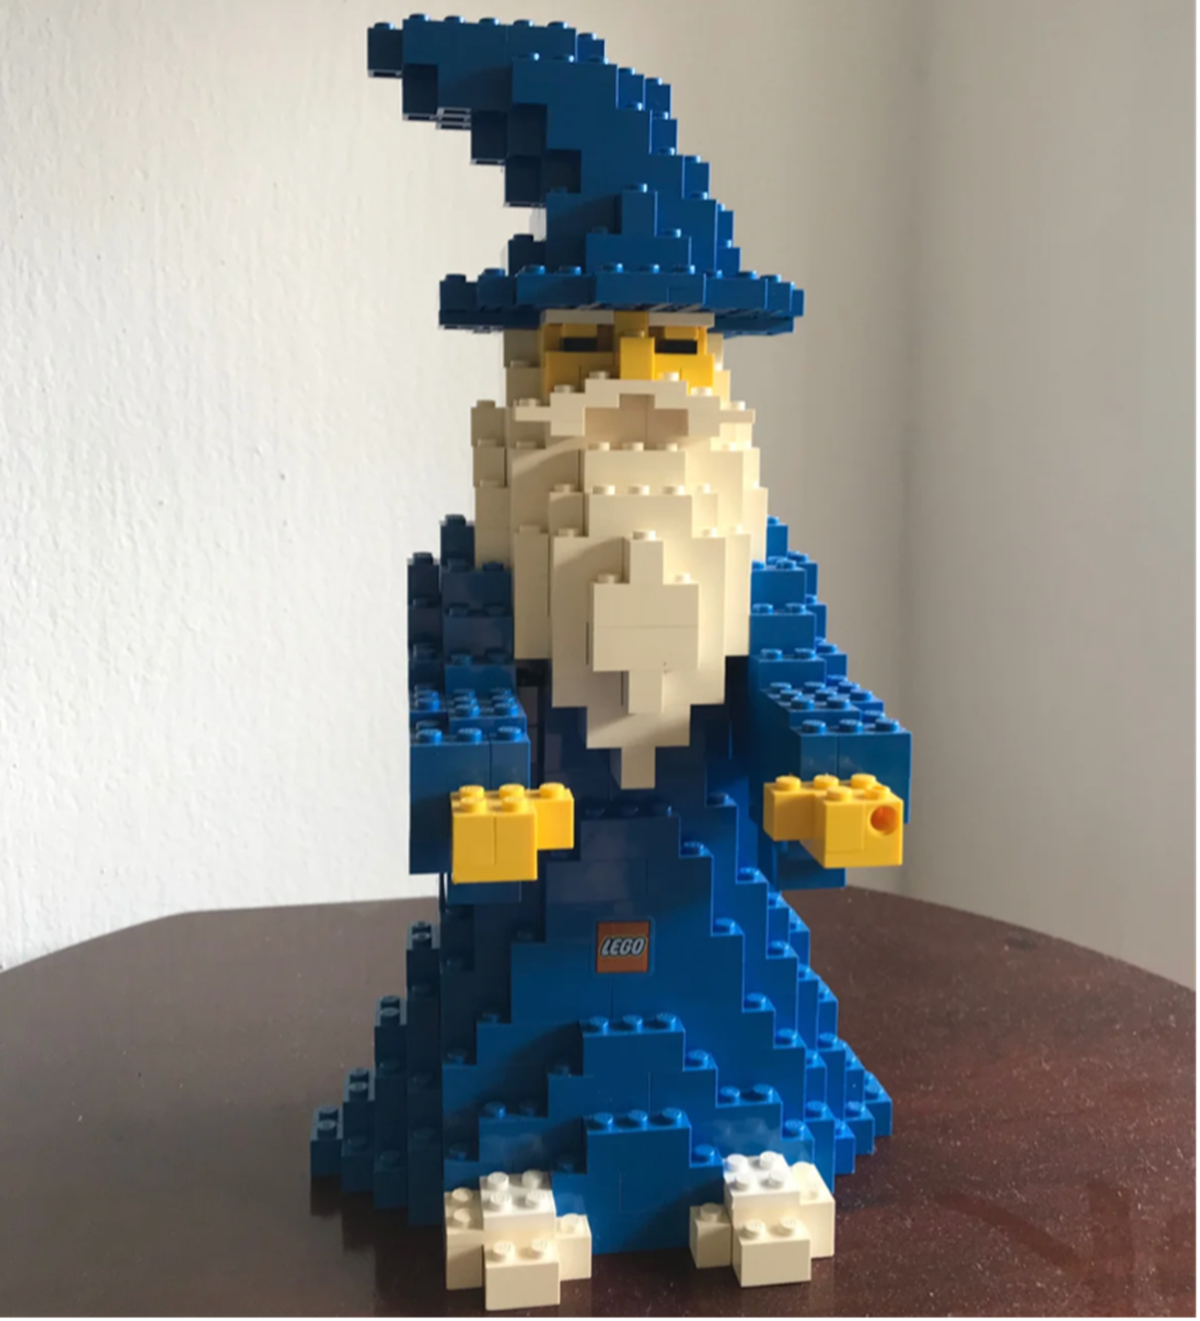 Sarah fra Ørbæk sælger denne Lego-troldmand for 850 kroner.